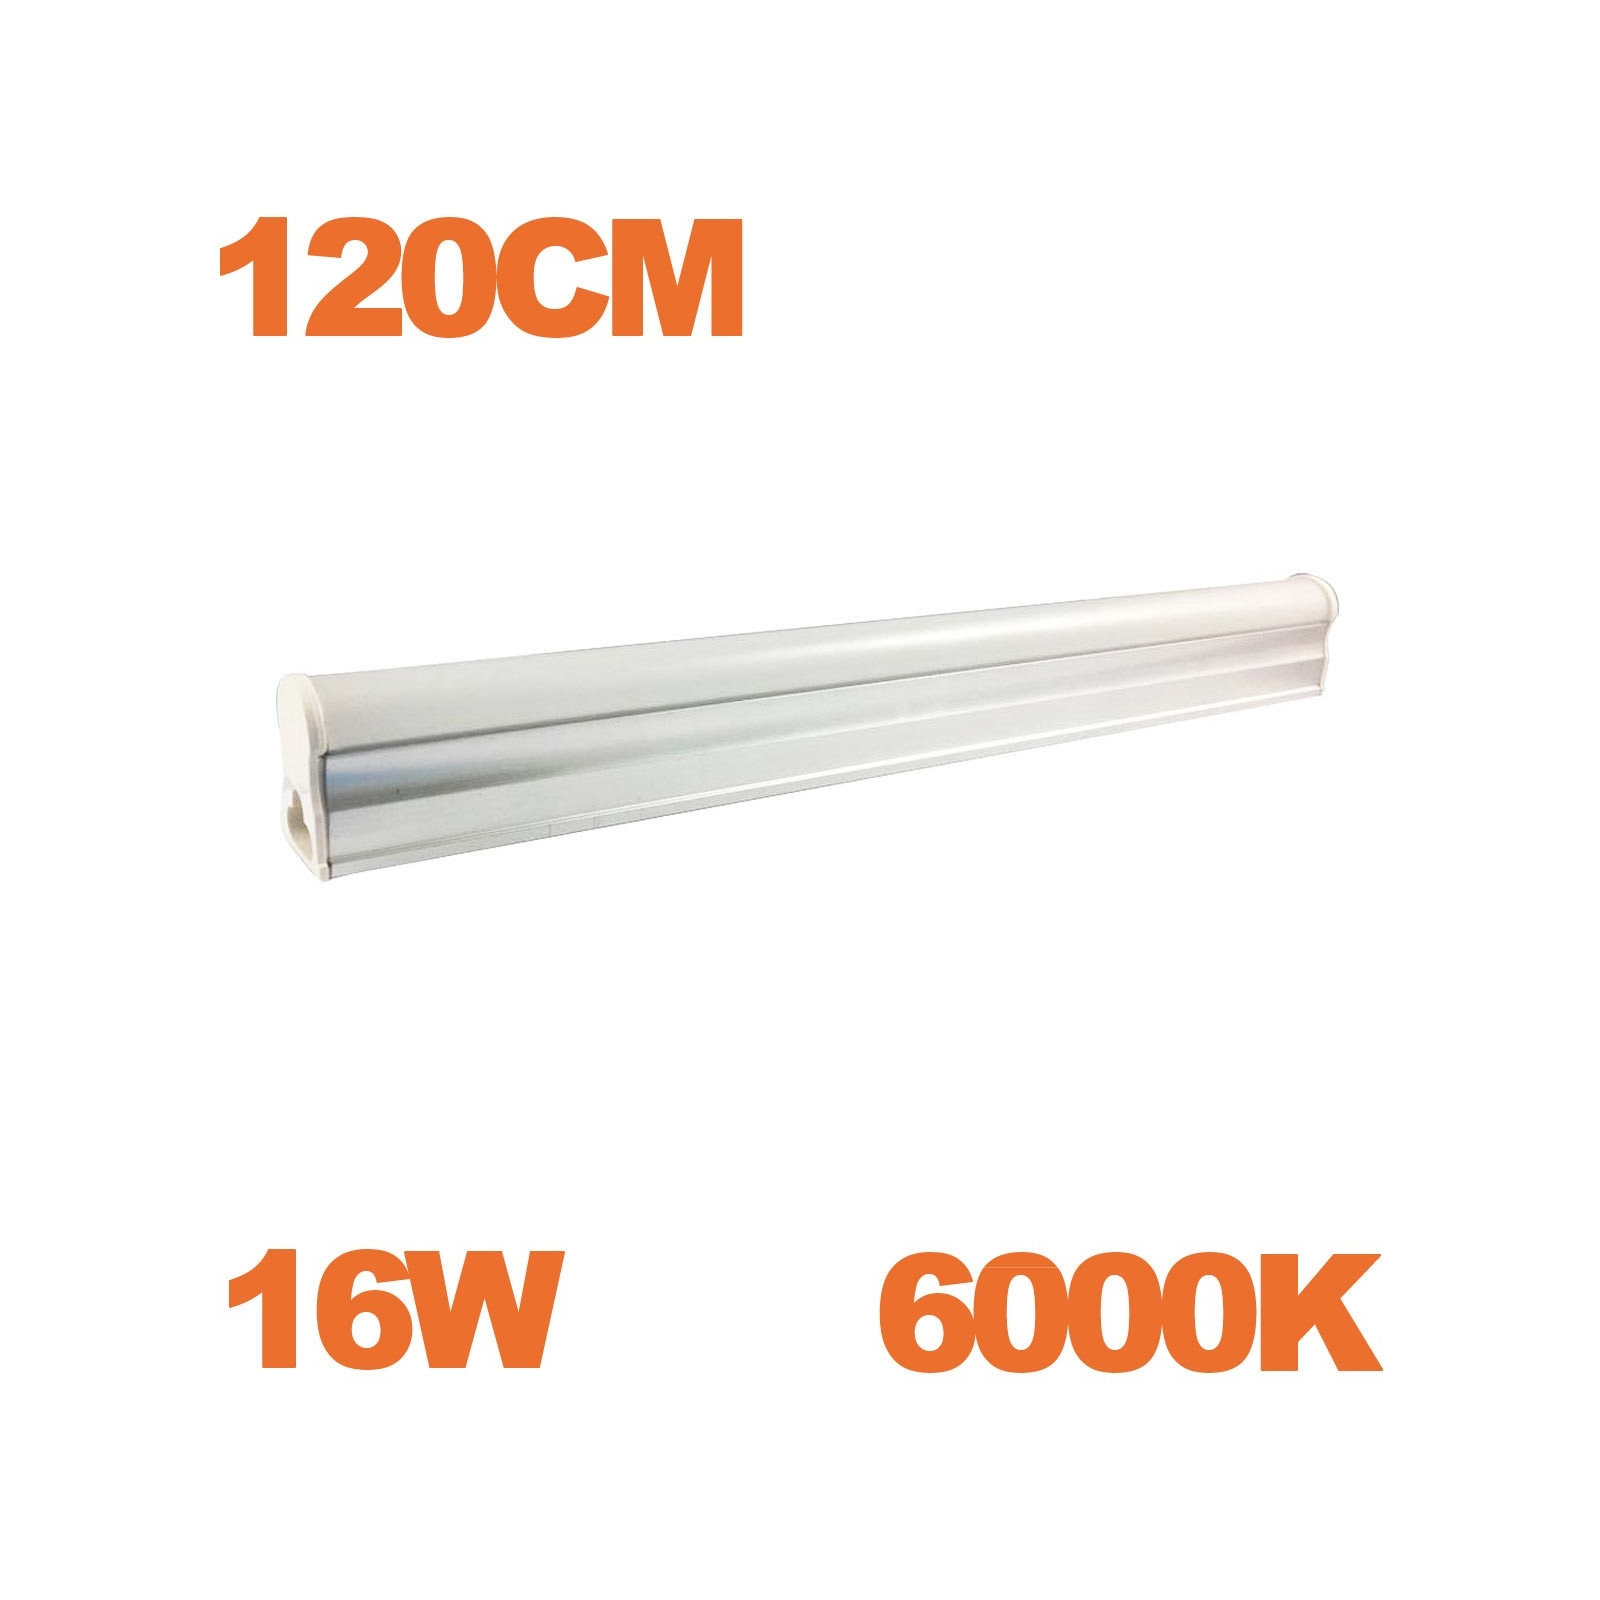 Tube LED T5 Puissance 16W Longueur 120cm Blanc Chaud 3000K